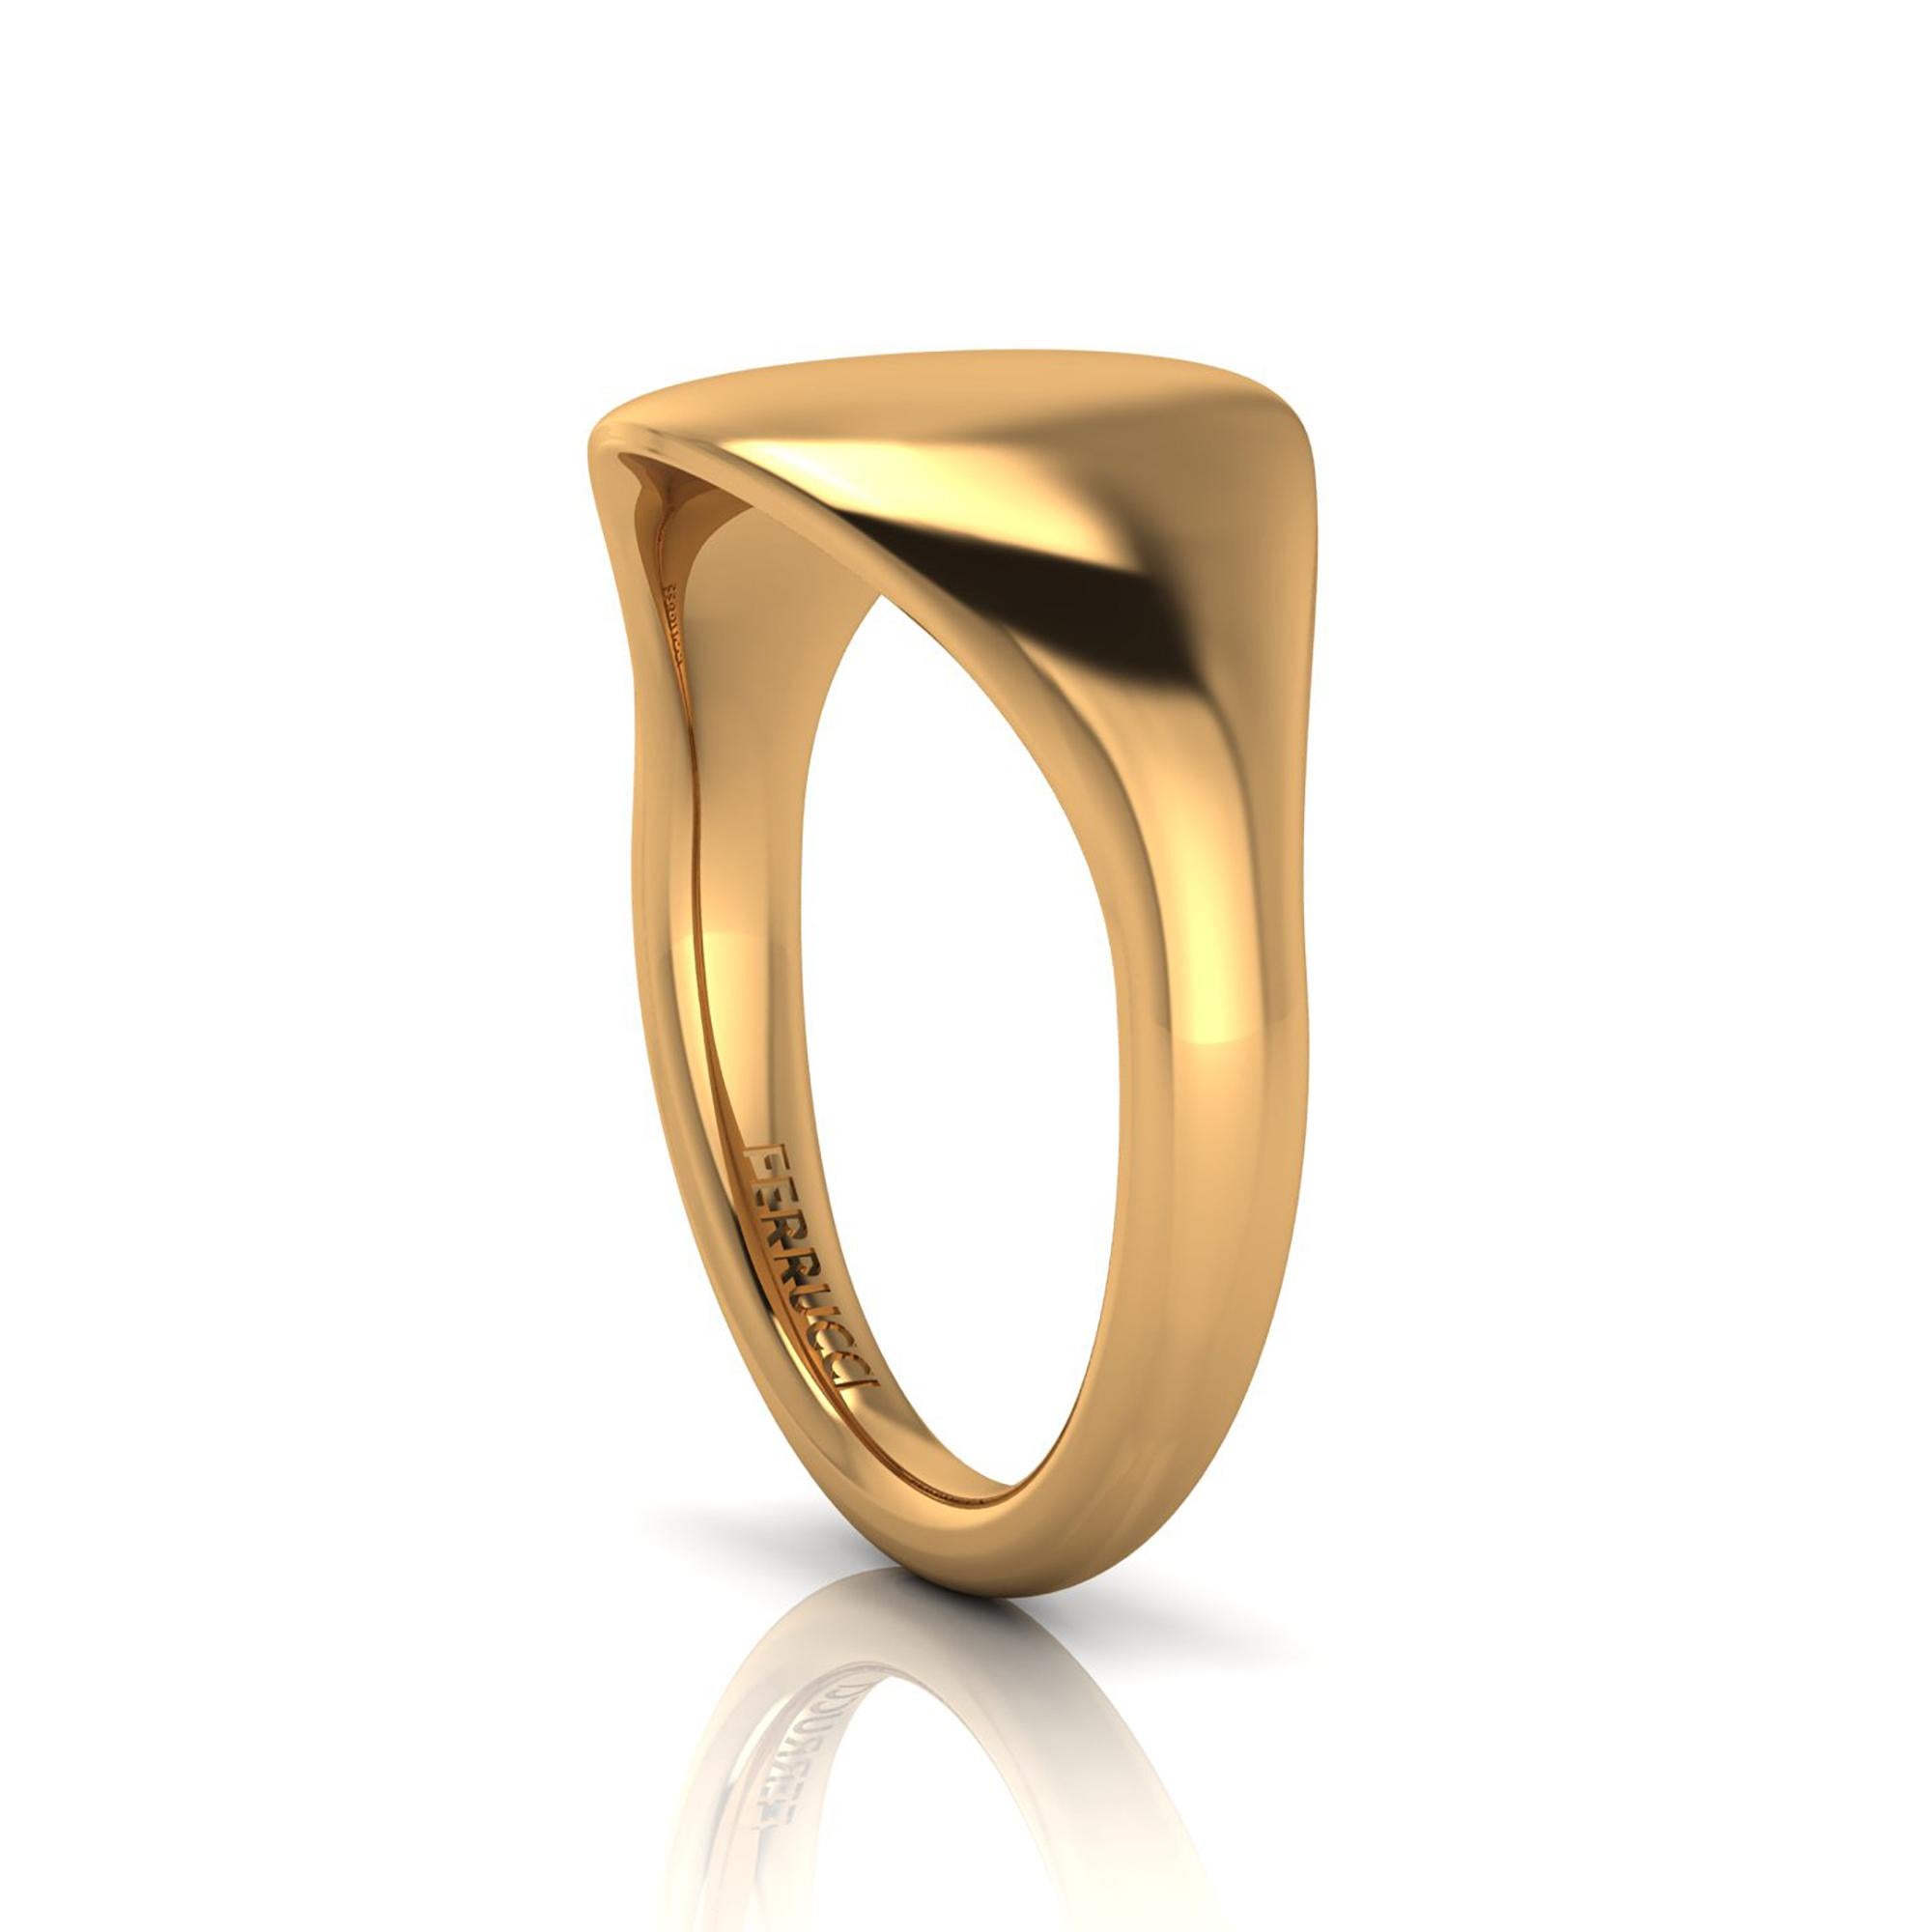 Gewölbter, organischer Ring aus massivem 18-karätigem Gold, rundes Profil für maximalen Tragekomfort, mutiges und modernes Design

Größe 8, kostenlose Größenanpassung bei Bestellung vor Versand.